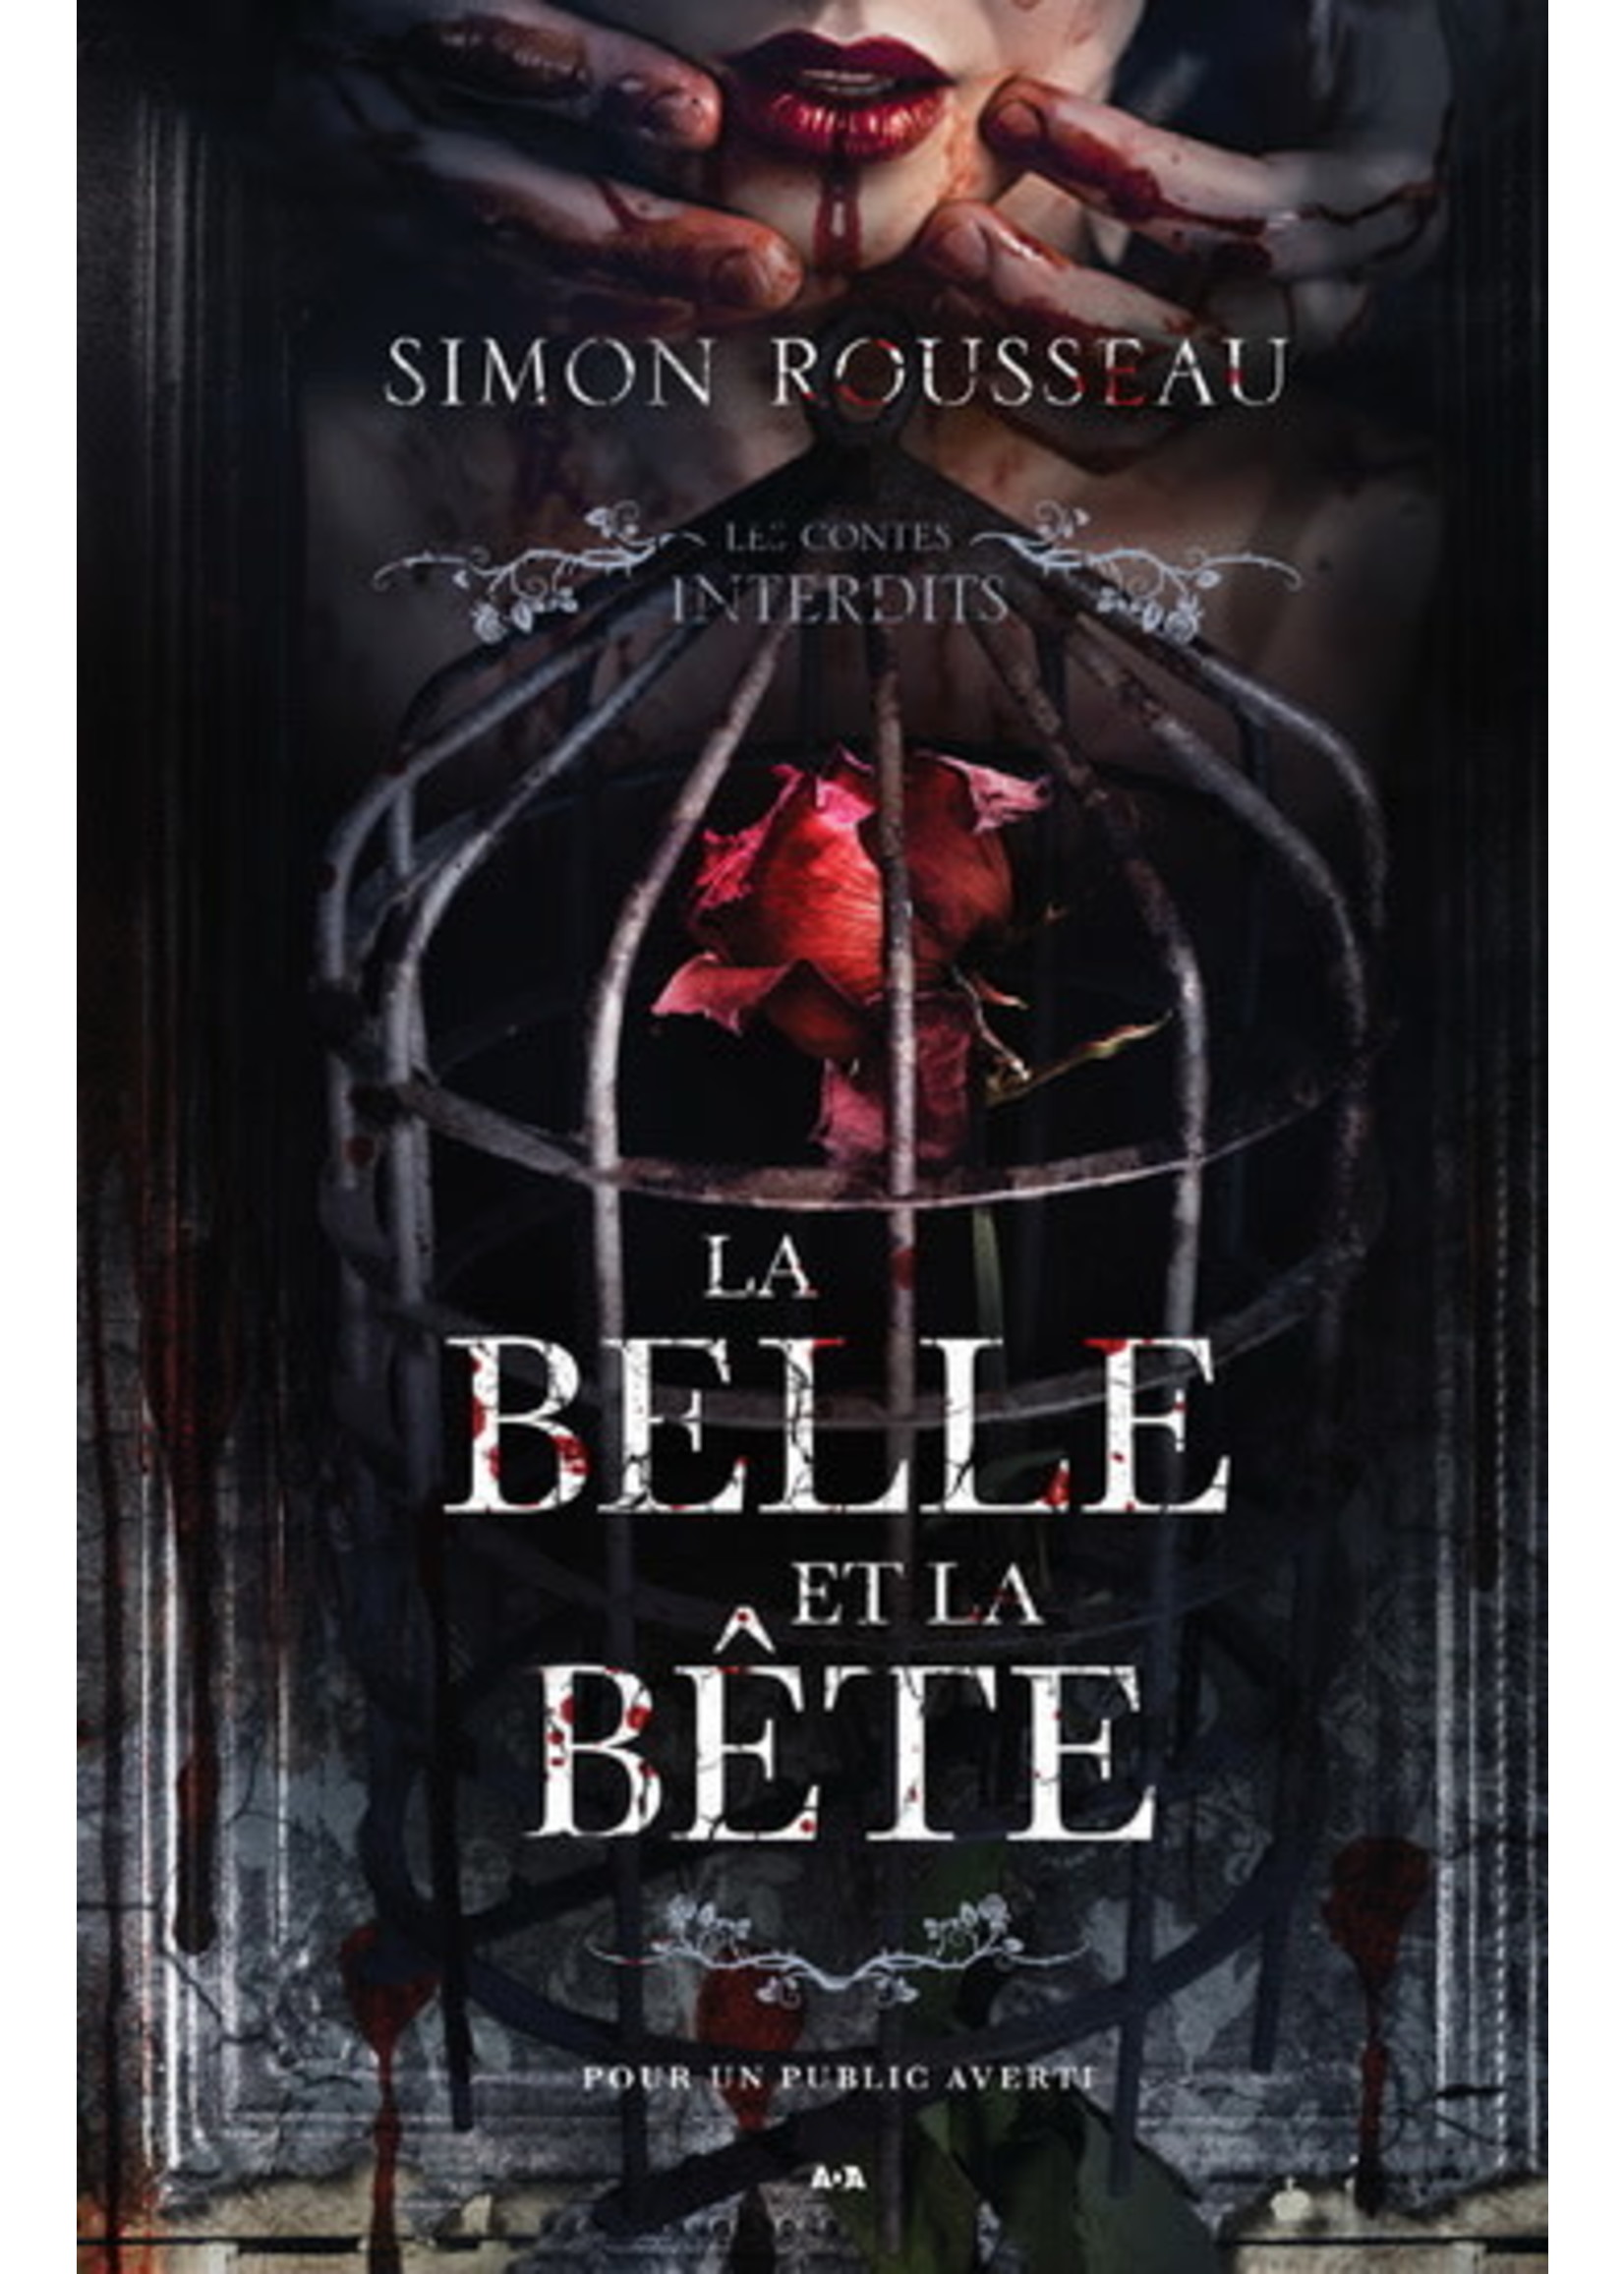 La belle et la bête by Simon Rousseau